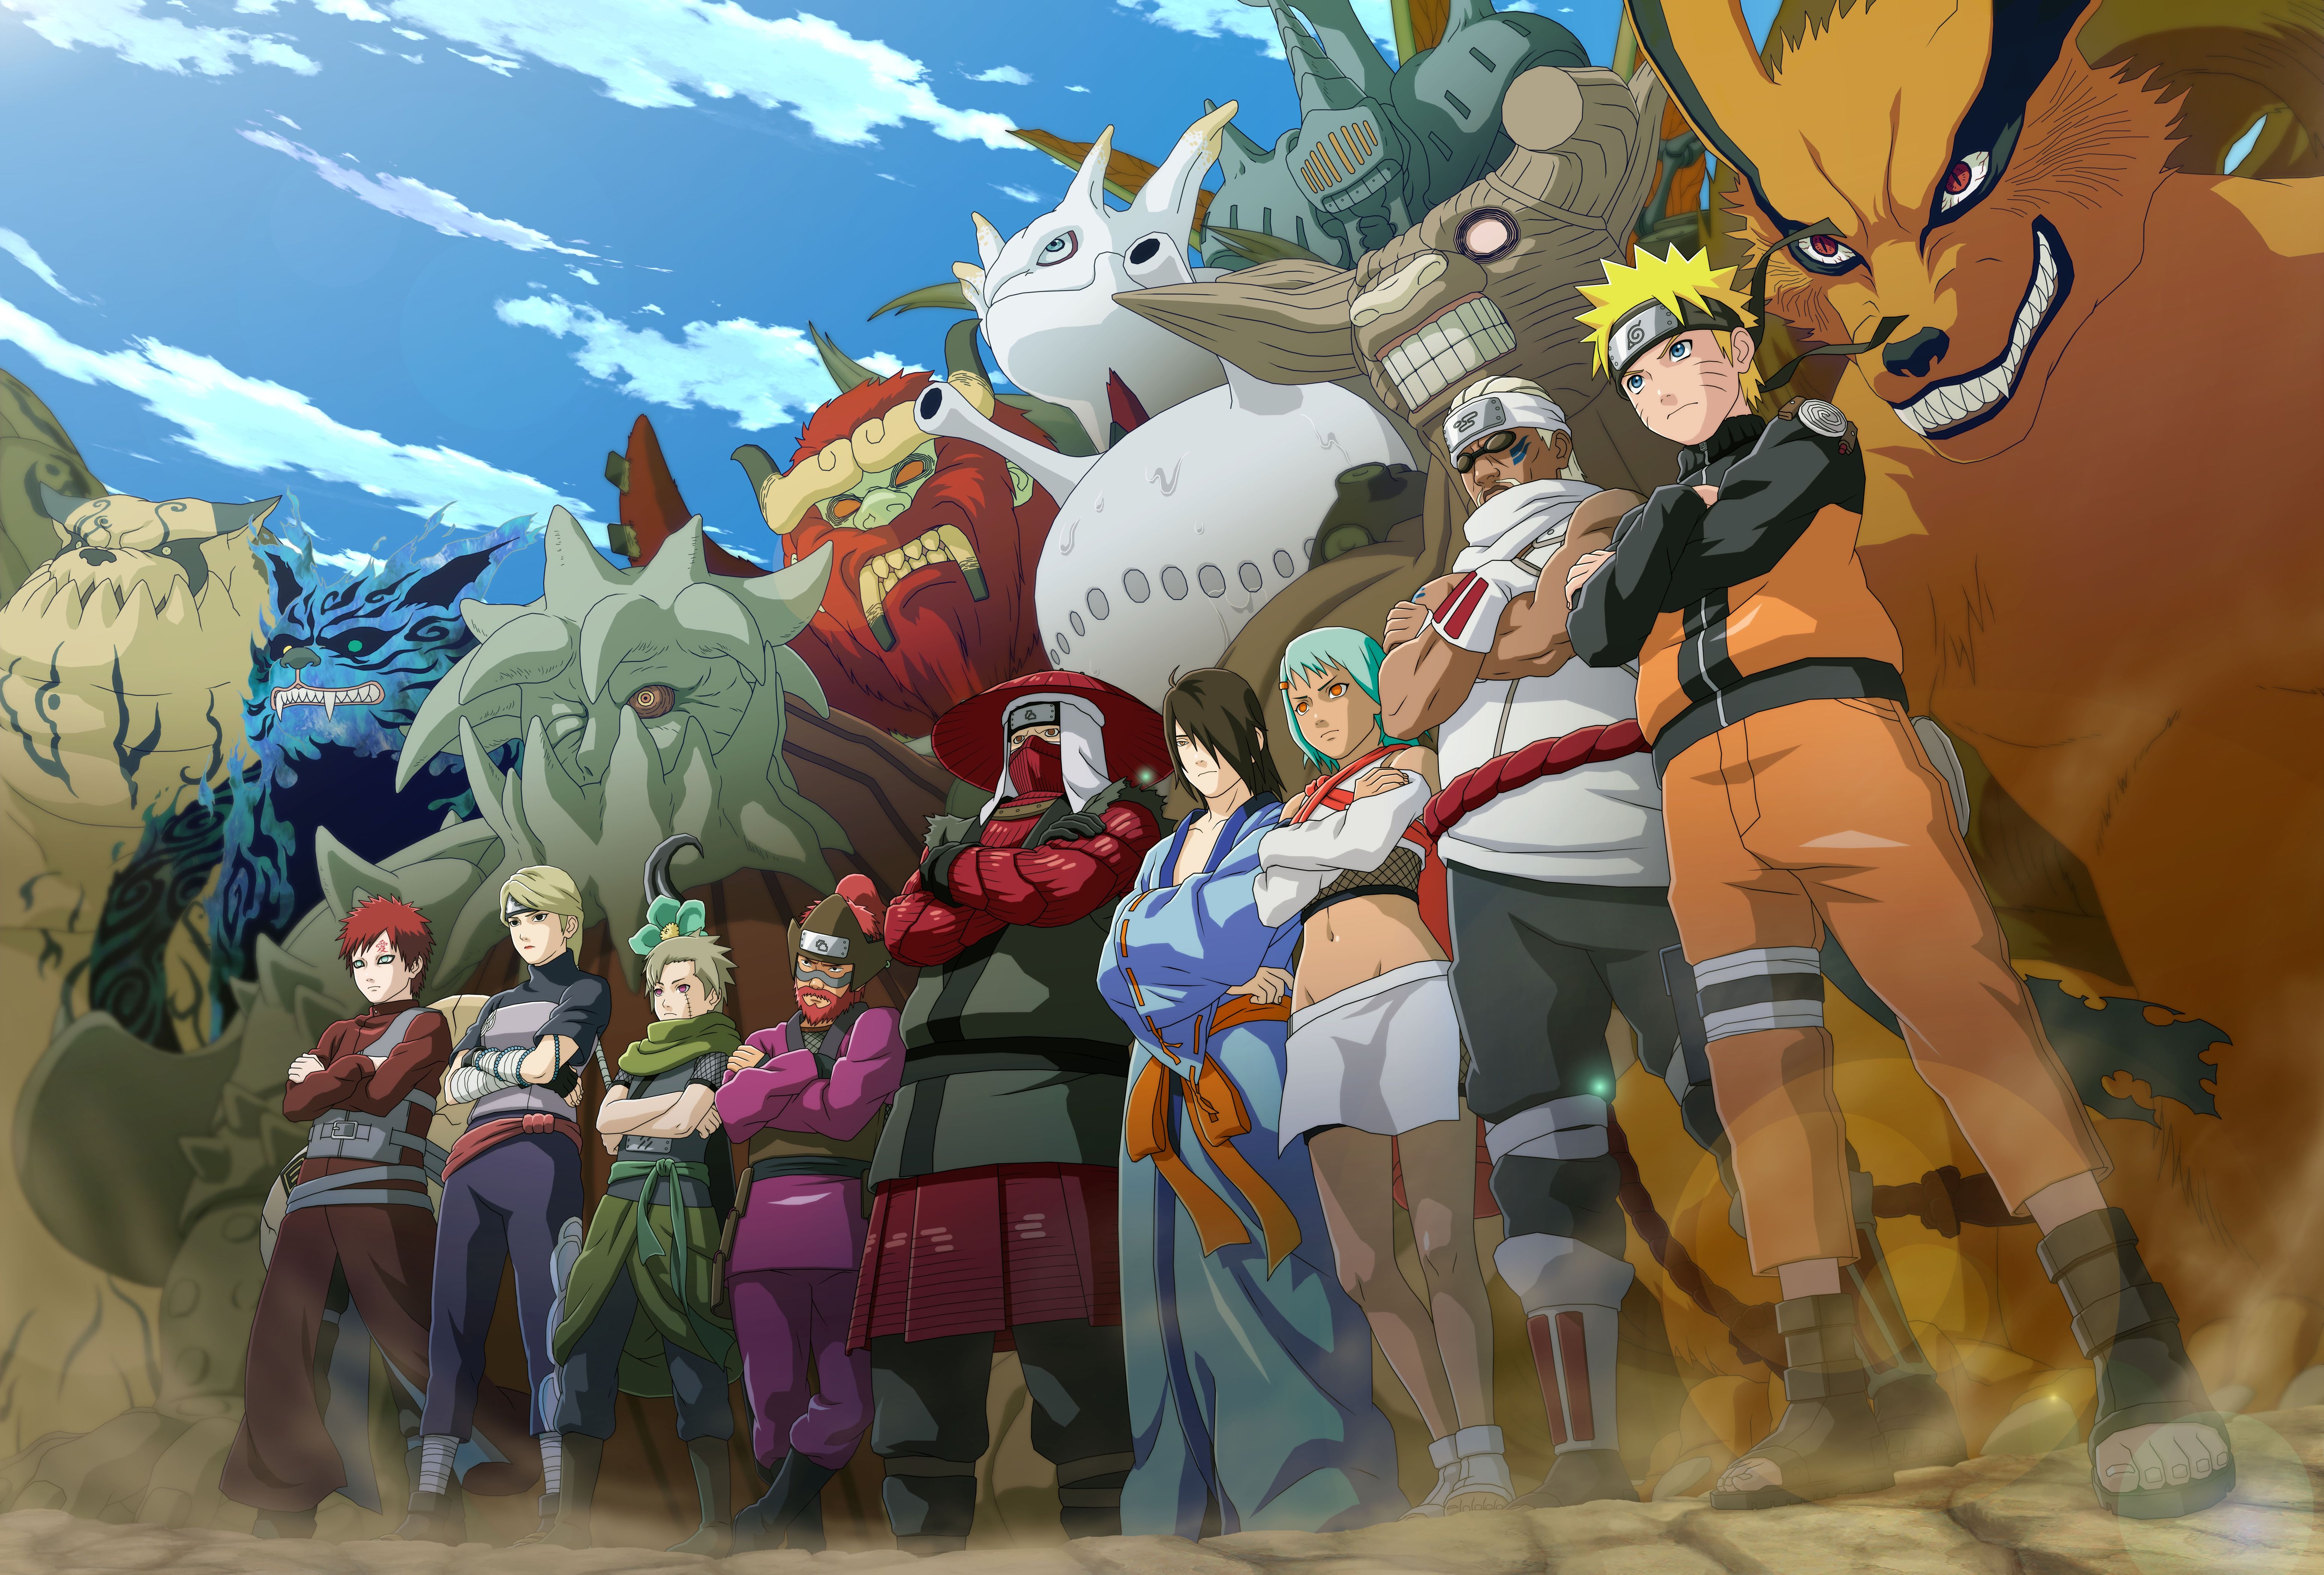 Gaara (Naruto) HD Wallpaper and Background Image